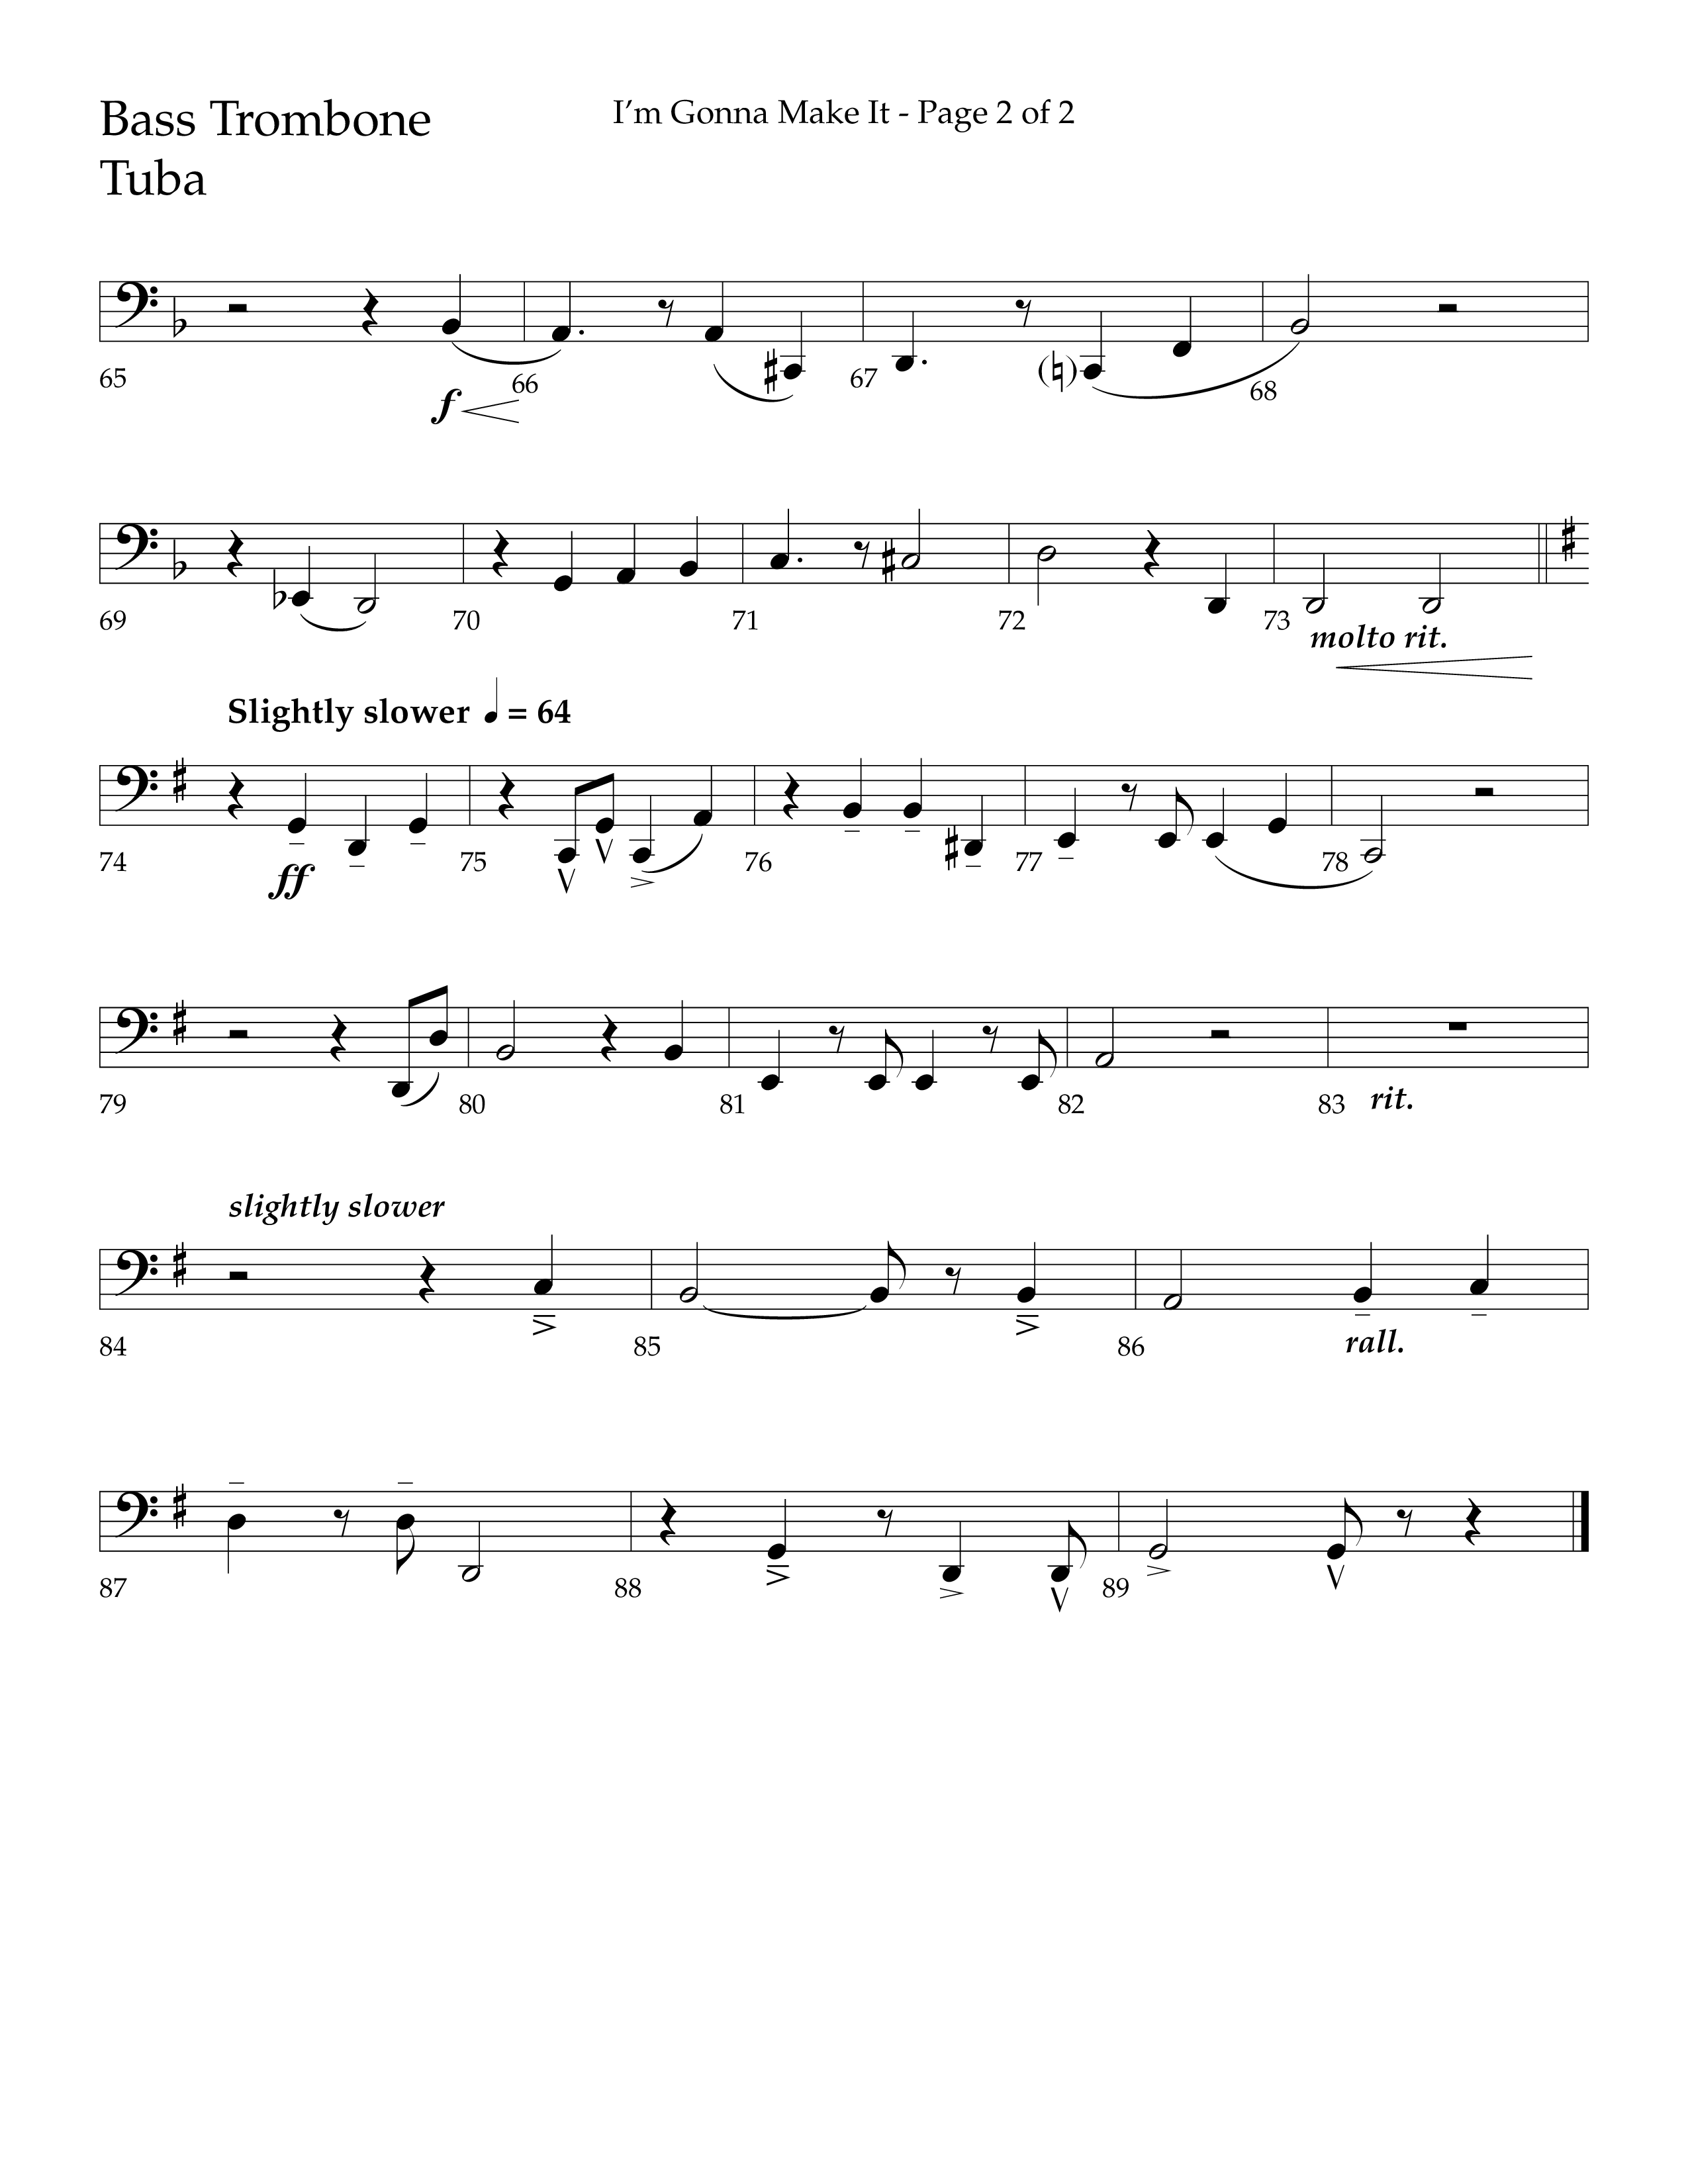 I'm Gonna Make It (Choral Anthem SATB) Orchestration (Lifeway Choral / Arr. J. Daniel Smith)